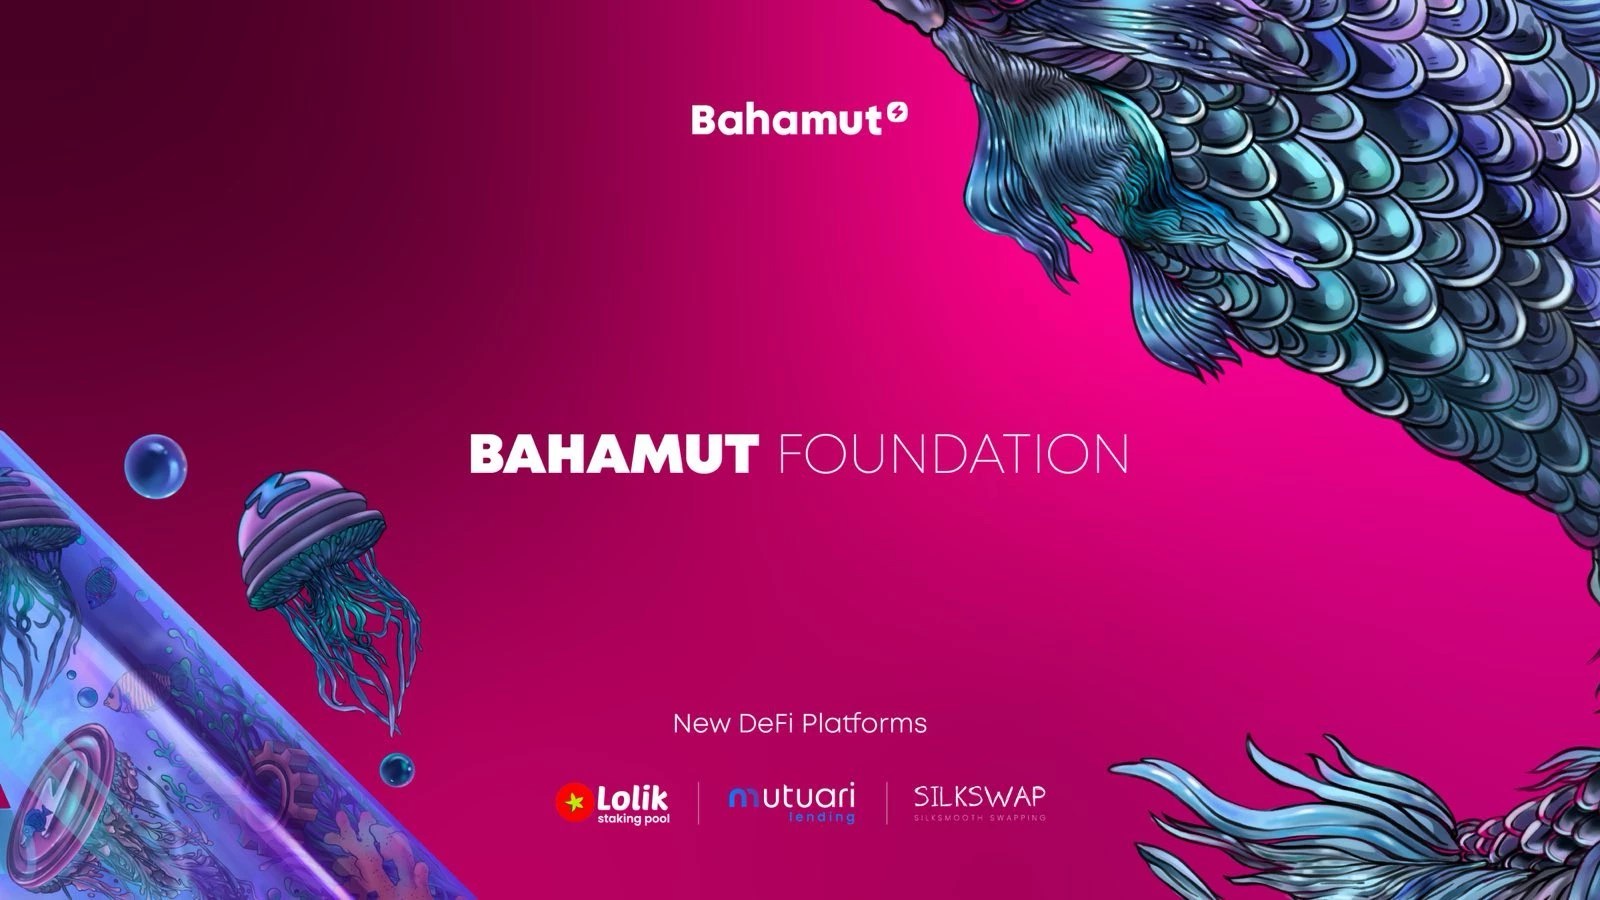 La Fondation Bahamut annonce le lancement réussi de 3 projets DeFi sur Bahamut et la liste des lauréats de la Bahamut Arena